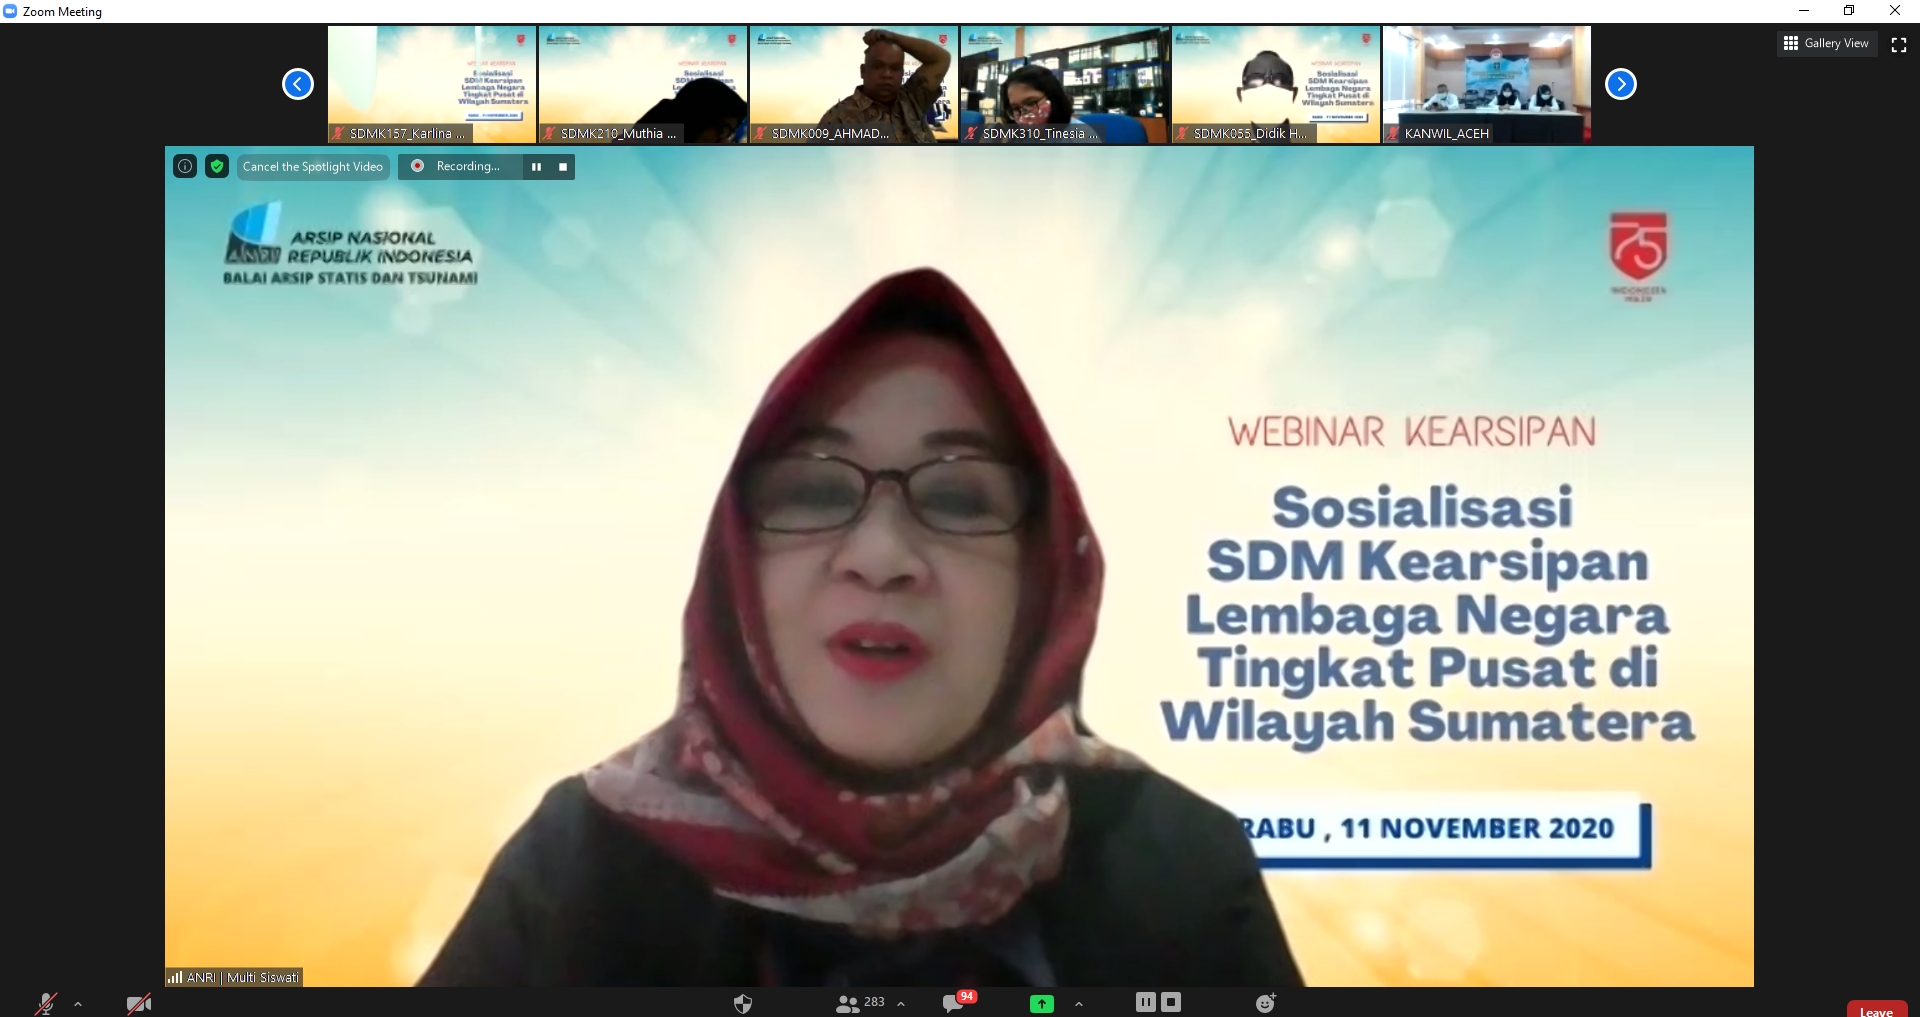 Balai Arsip Statis dan Tsunami ANRI Gelar Sosialisasi SDM Kearsipan di Wilayah Sumatera